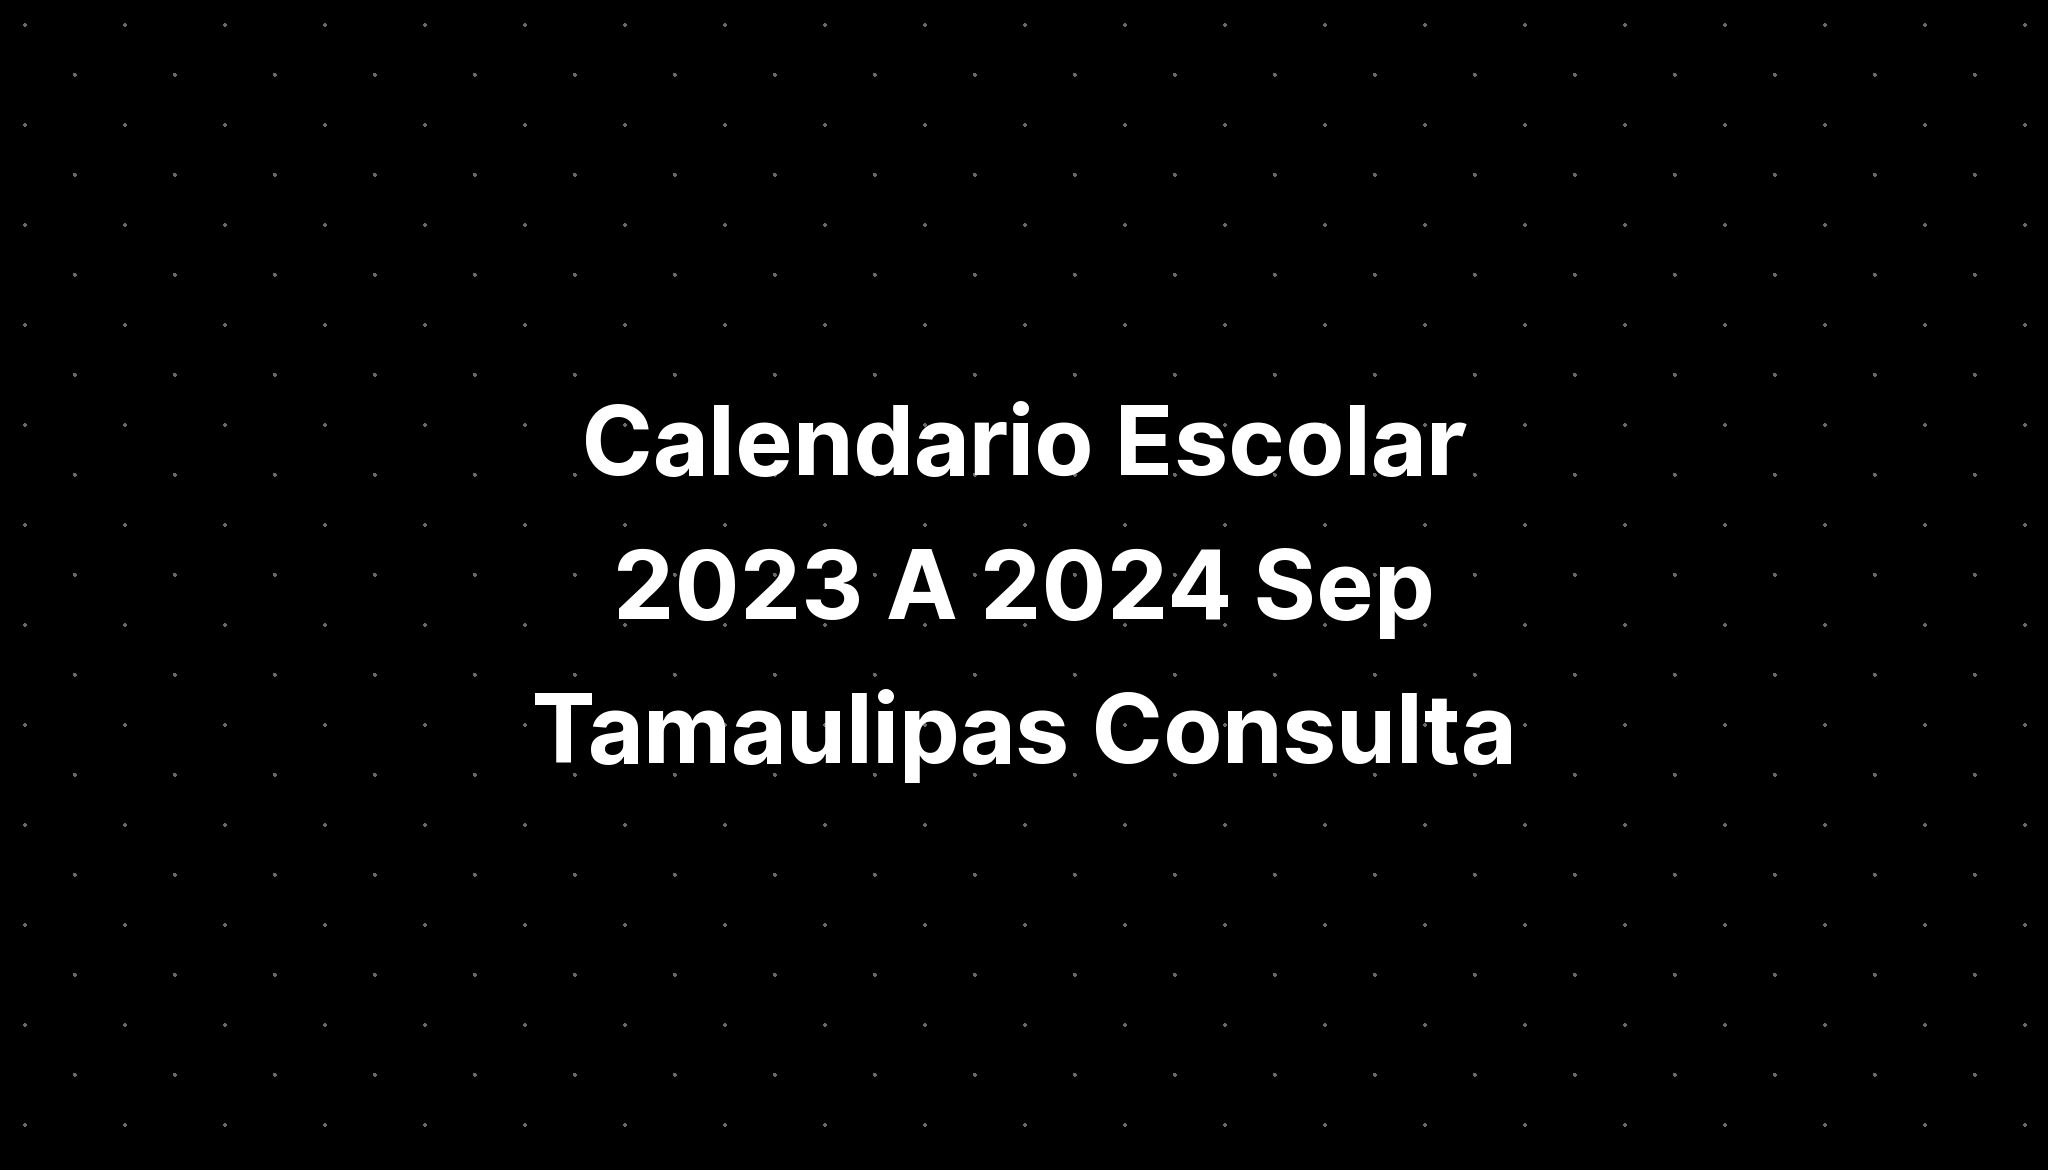 Calendario Escolar 2023 A 2024 Sep Tamaulipas Consulta IMAGESEE